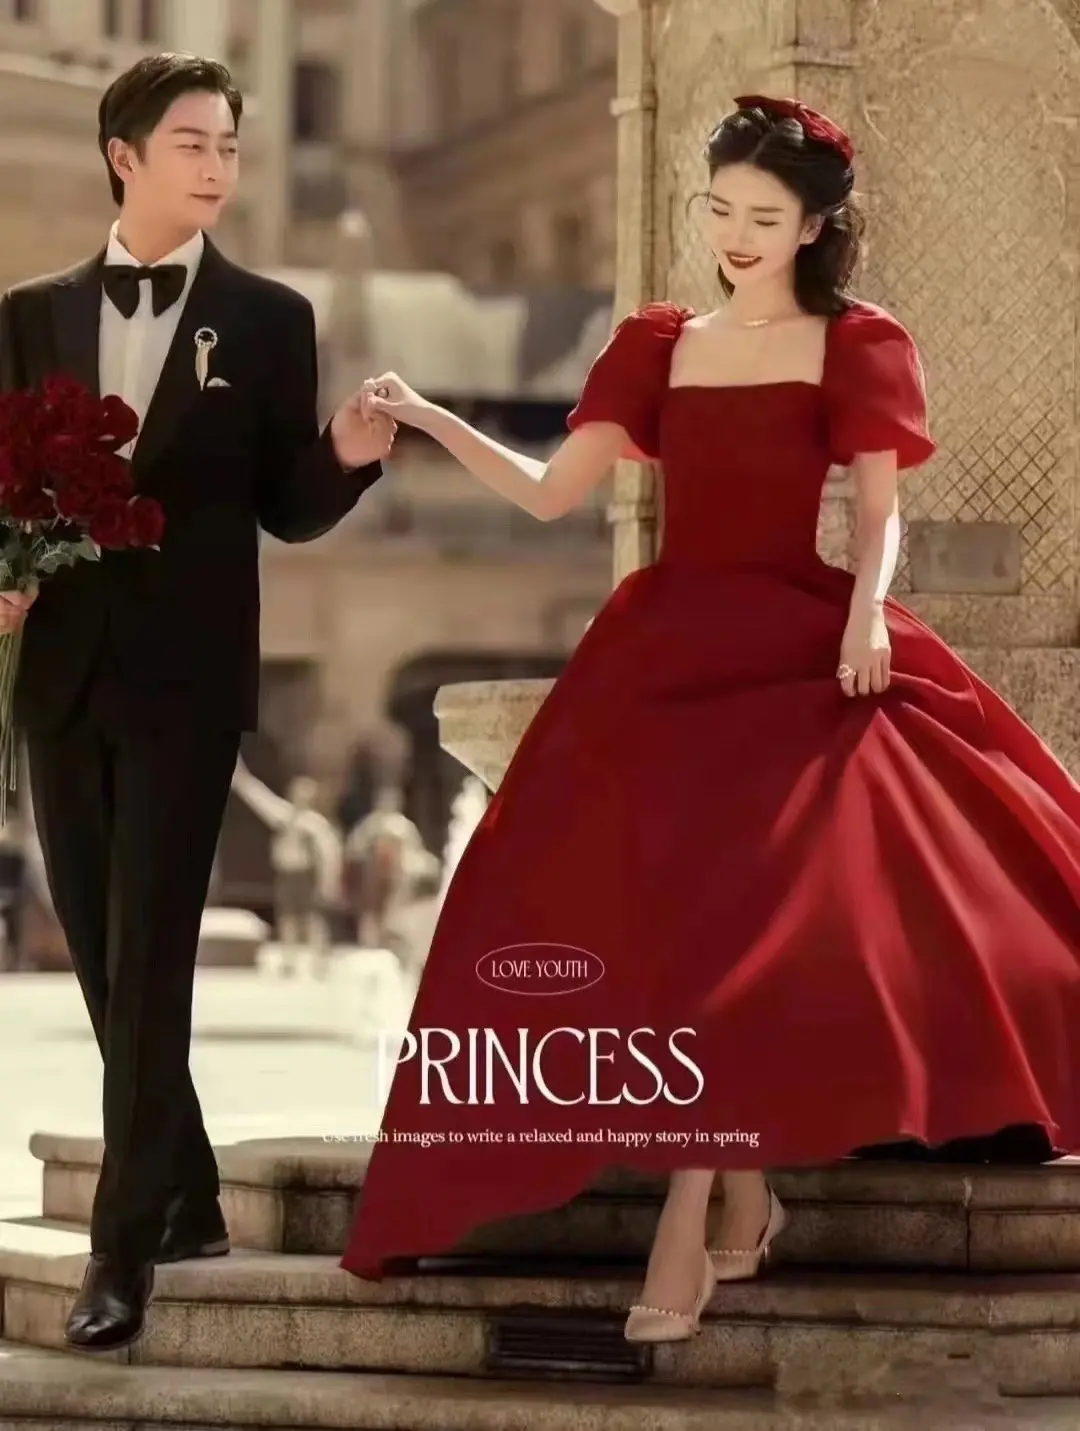 孝感主题婚纱摄影 迪士尼在逃公主风主题婚纱照 ·韩宫风尚